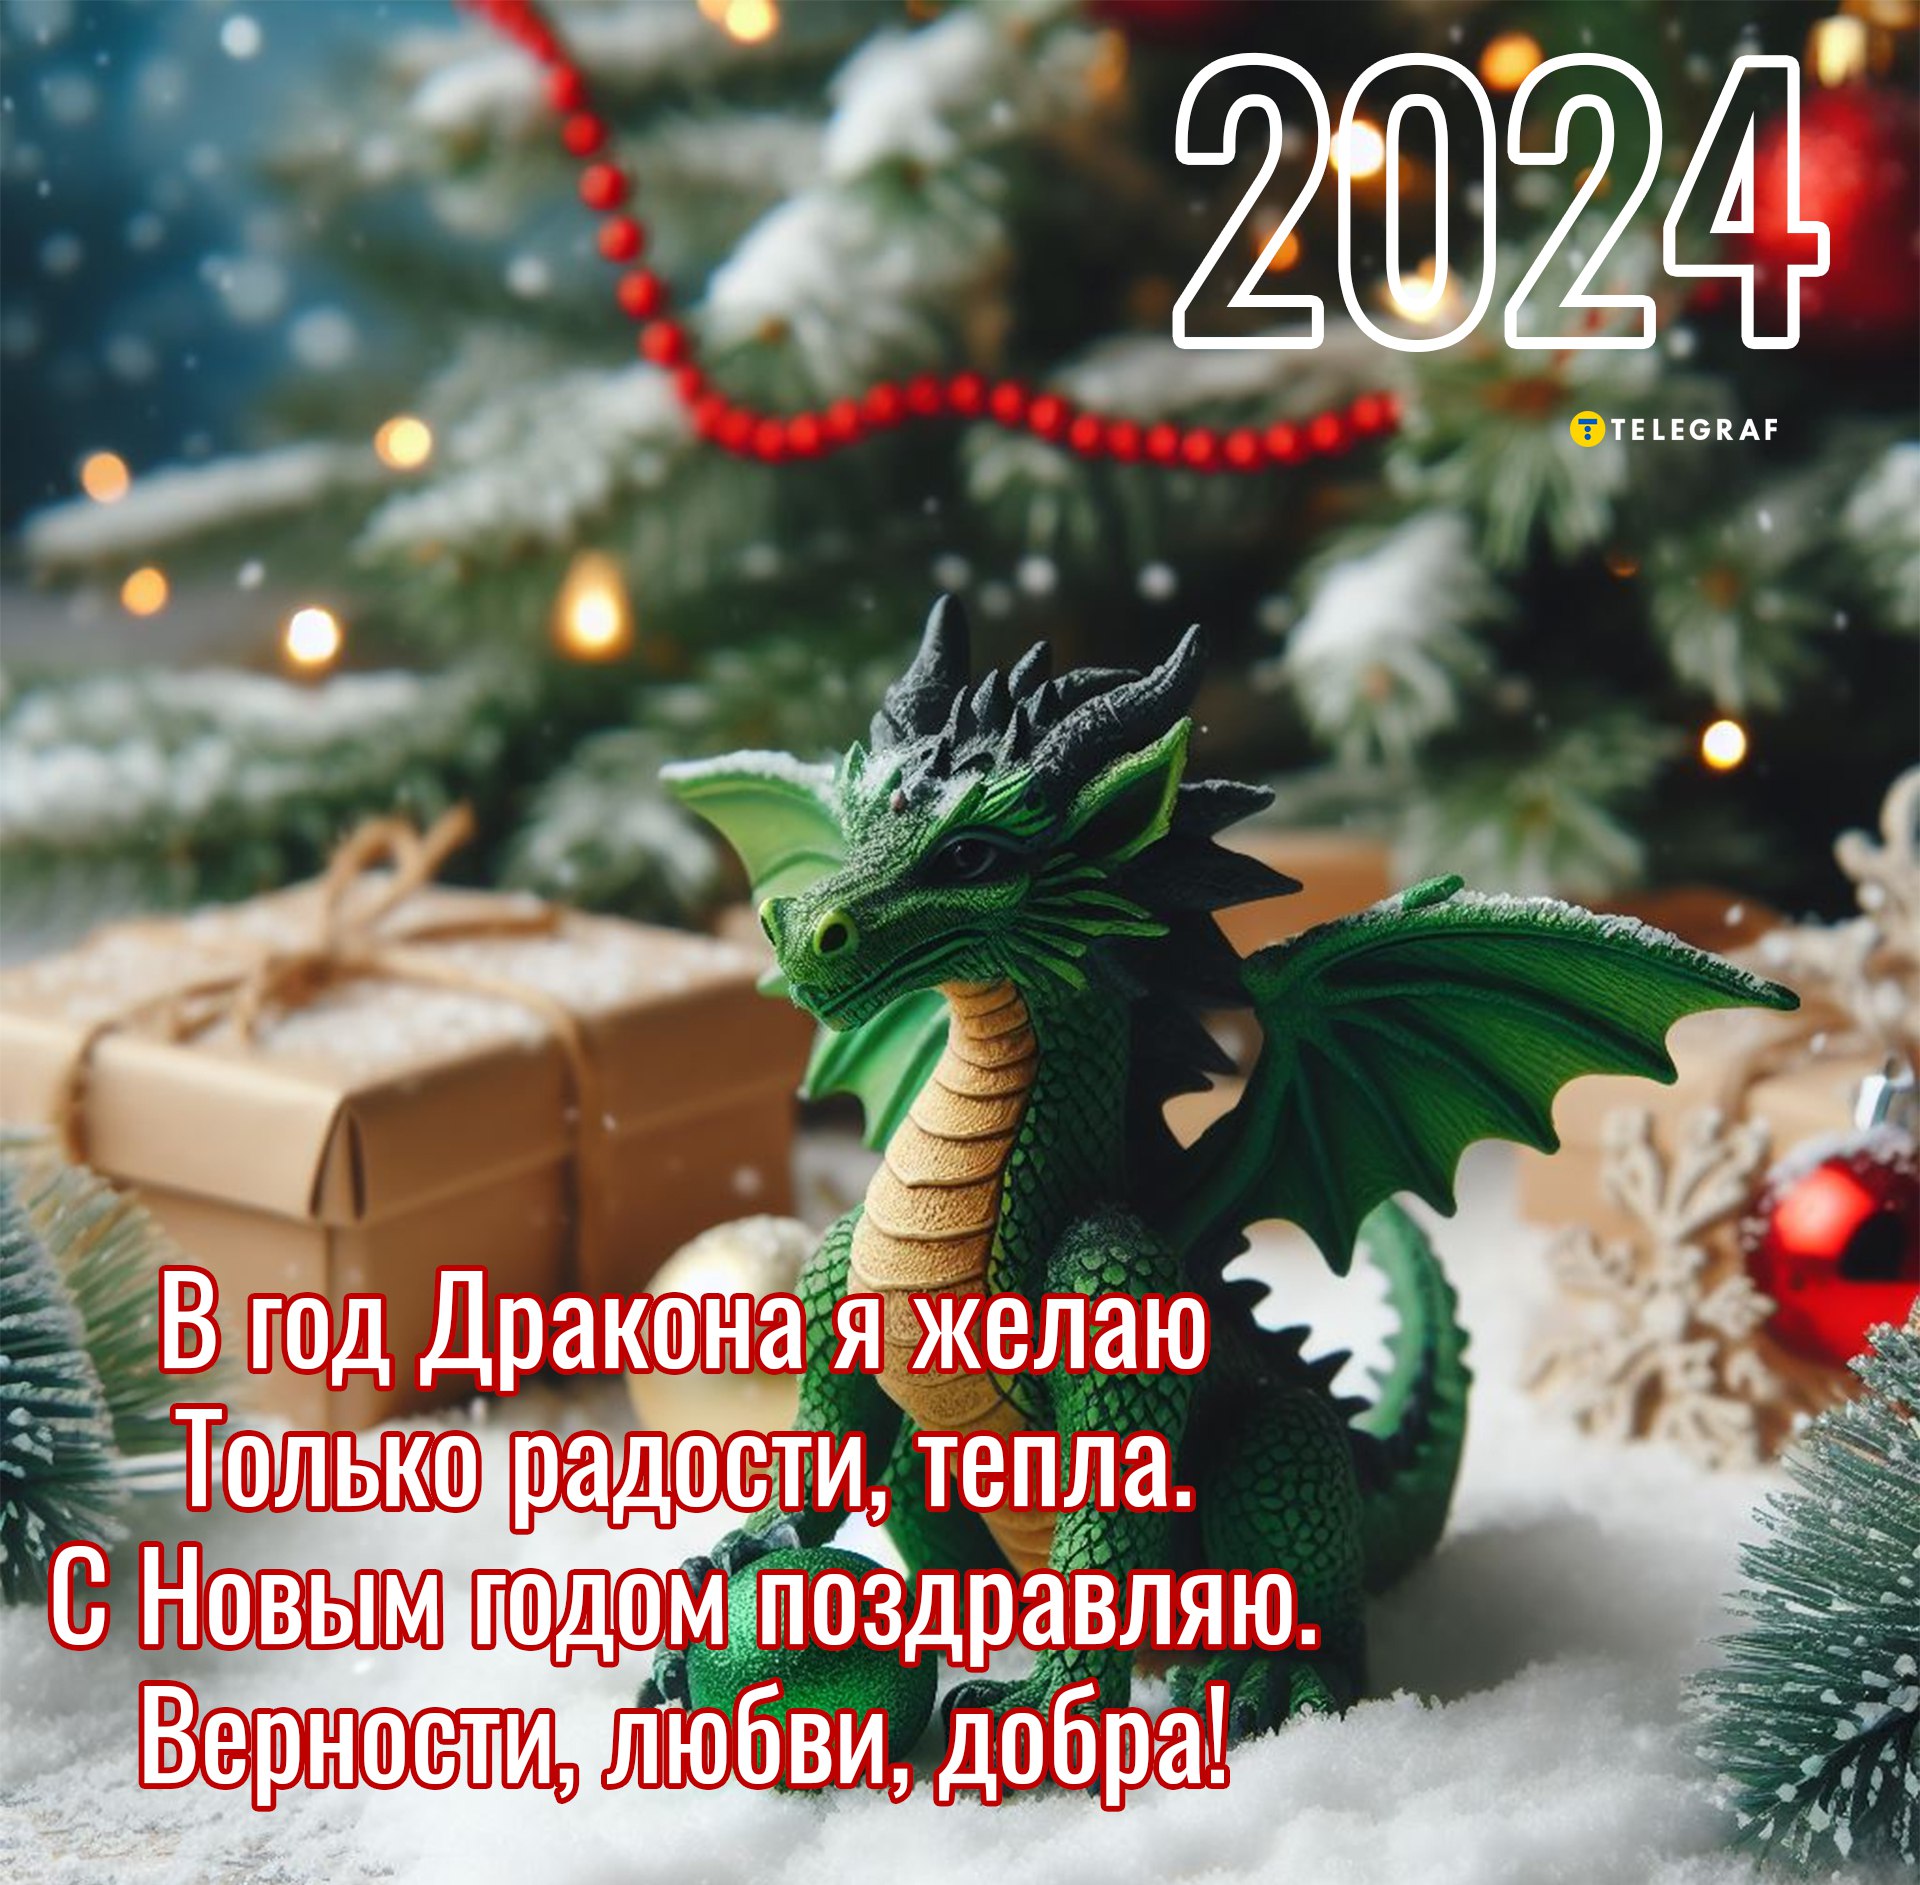 Изображения по запросу Плакат новый год 2024